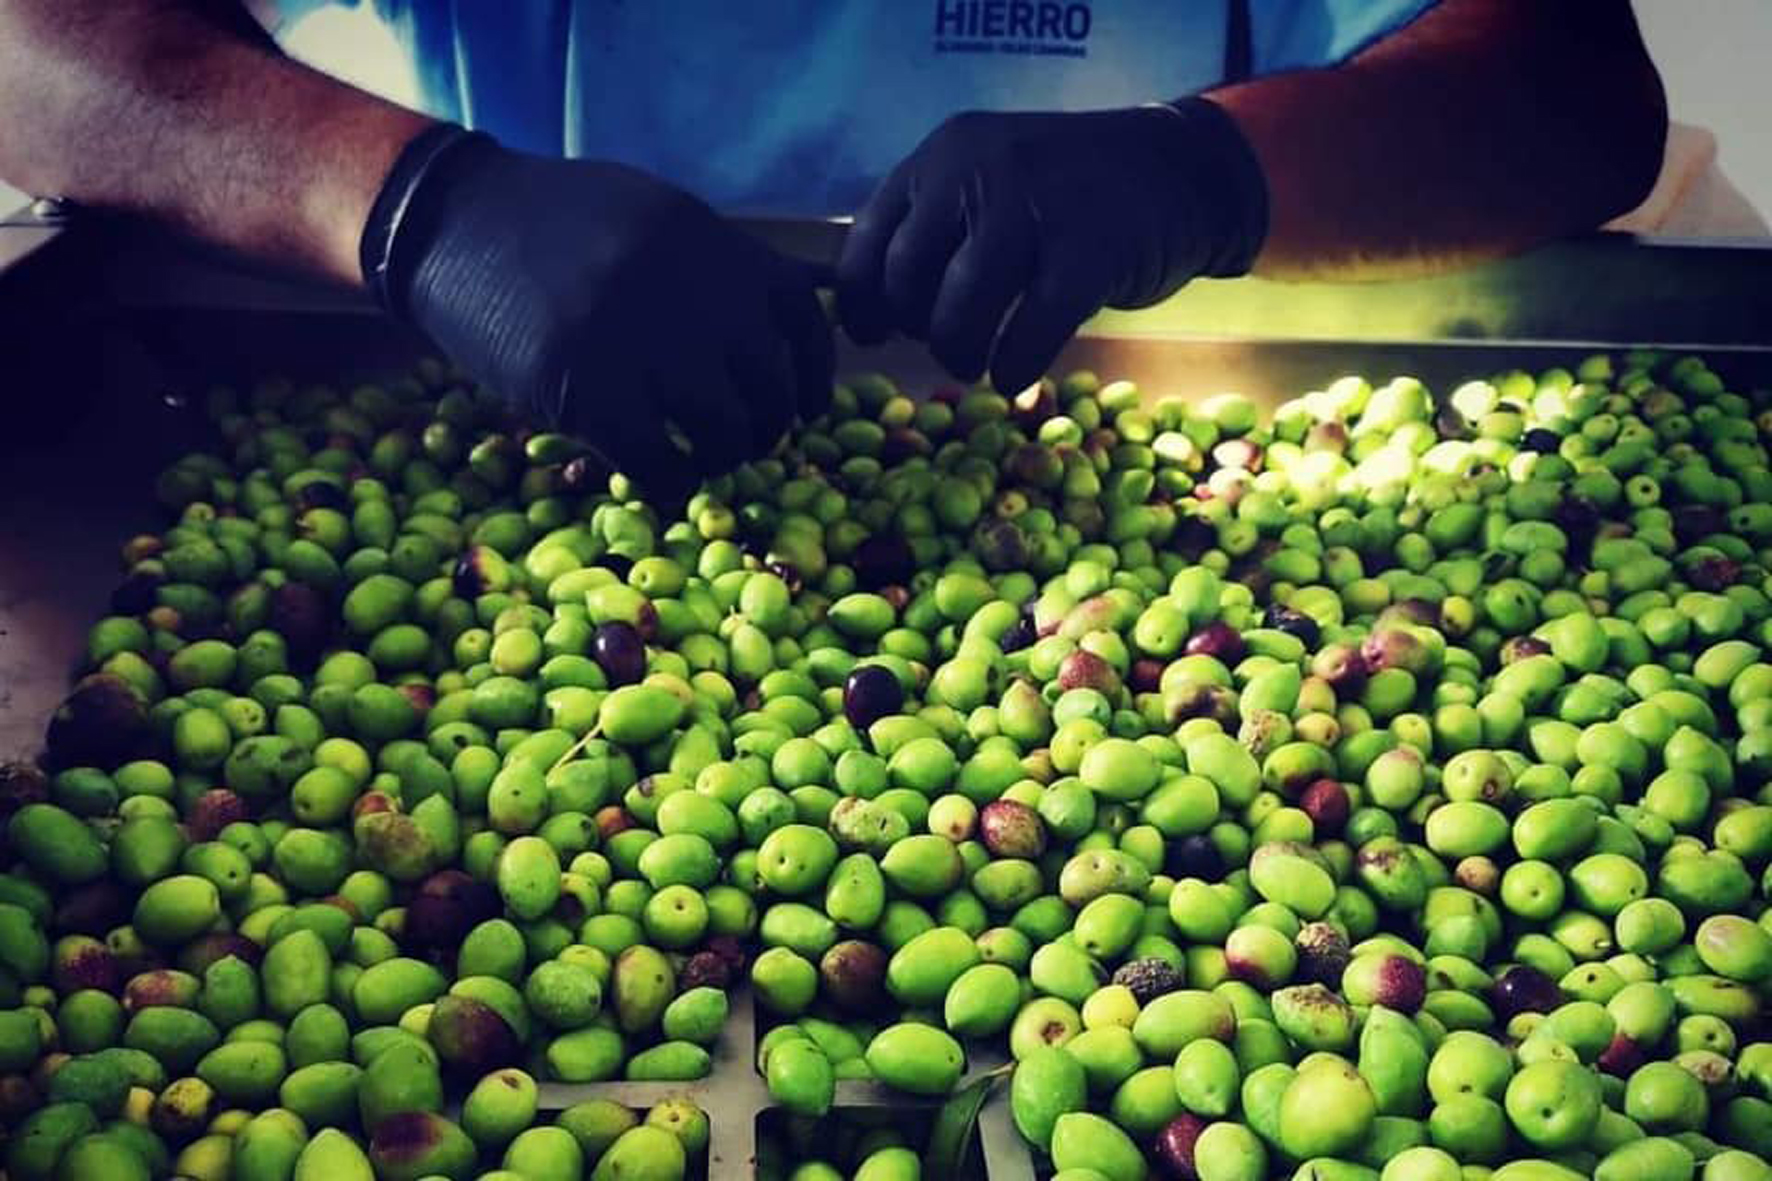 Los más de 30 productores de olivo en El Hierro han recogido 1730 kilos en esta campaña 2019